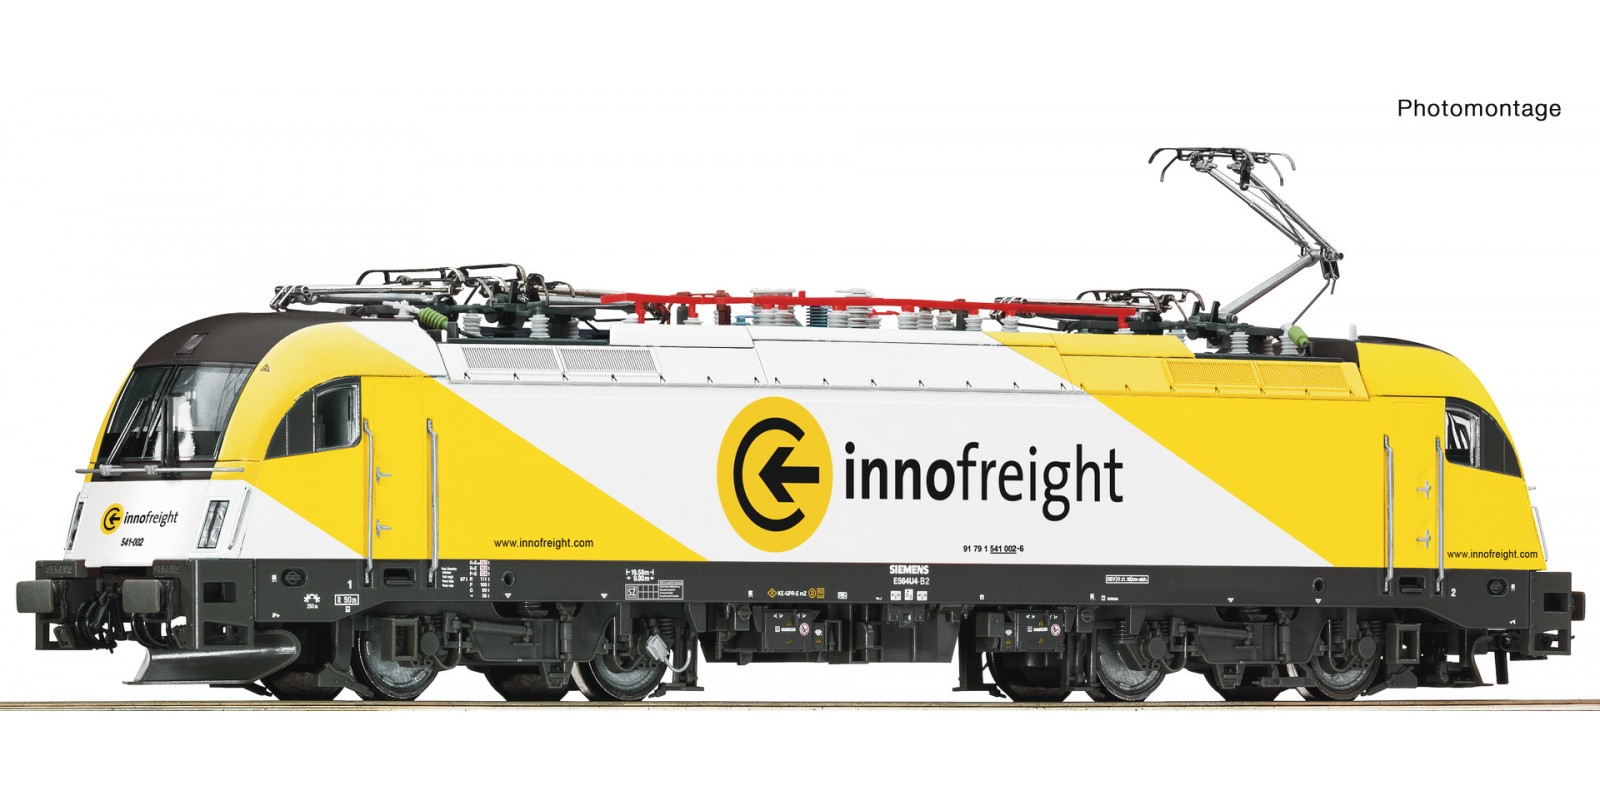 RO73486 - Electric locomotive 541 002-6 “Innofreight”, SZ